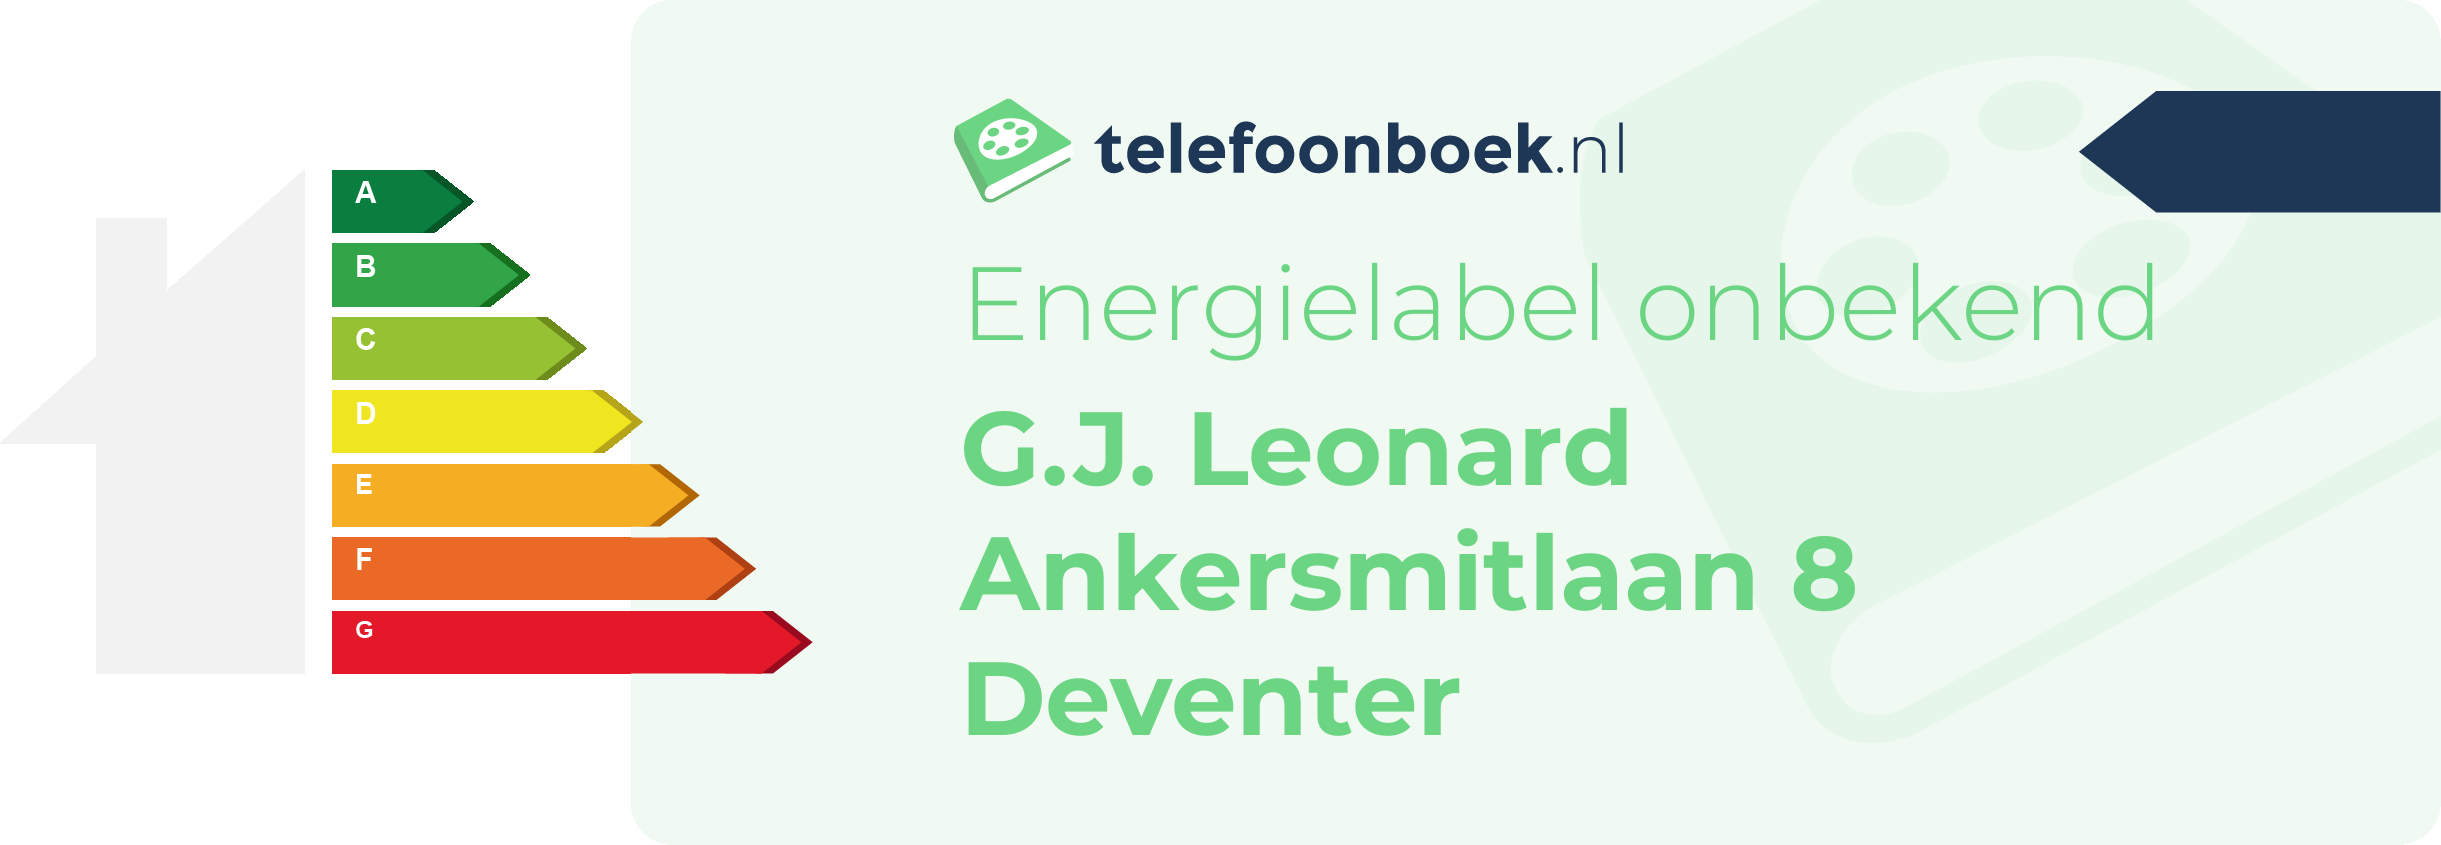 Energielabel G.J. Leonard Ankersmitlaan 8 Deventer